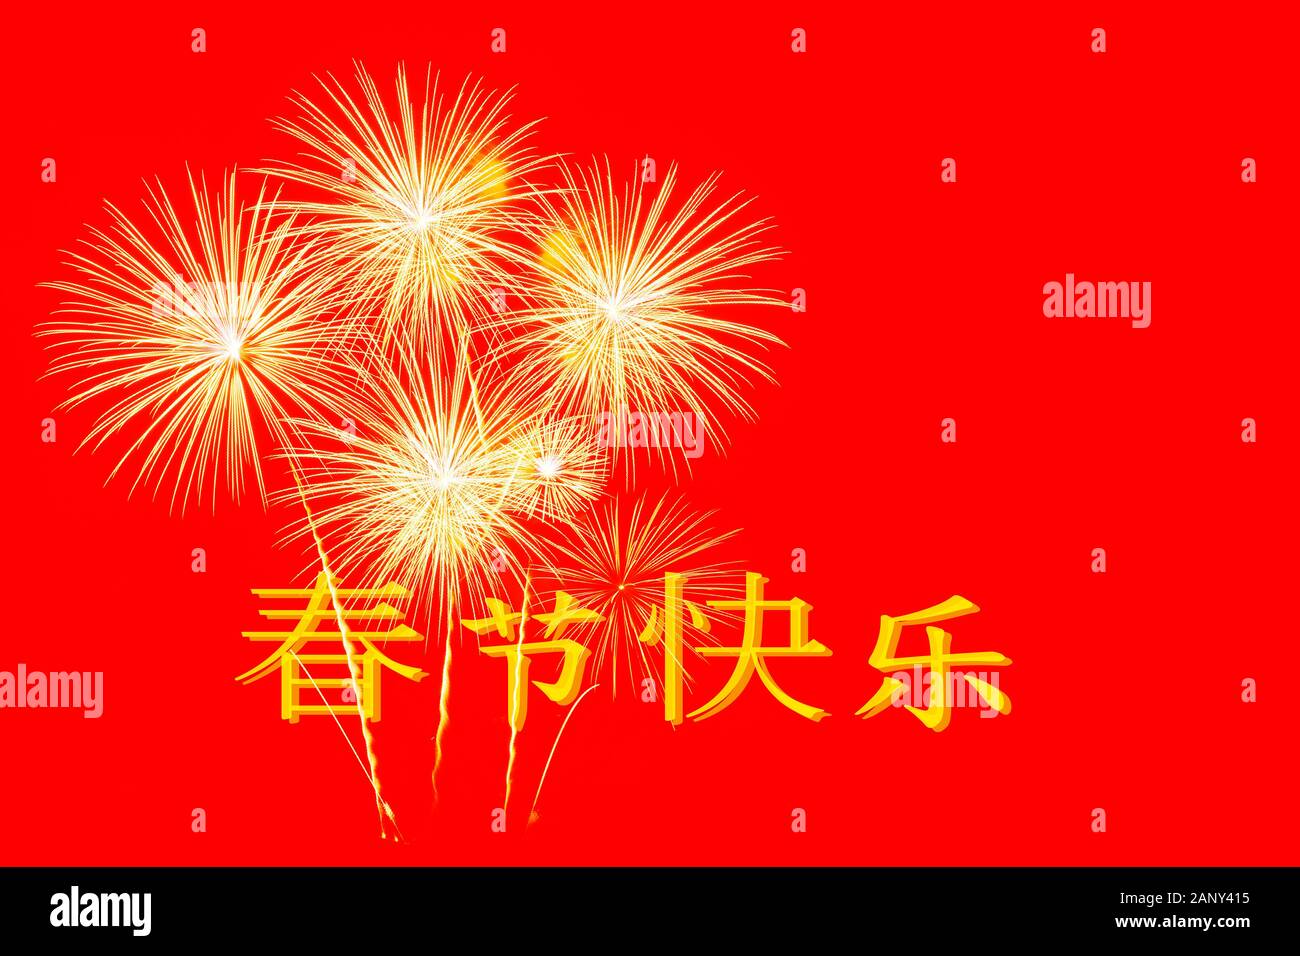 Chinesische Wort bedeutet glücklich Chinesisch Neujahr und gold Feuerwerk Feier auf rotem Hintergrund für das chinesische Neujahr feiern. Stockfoto